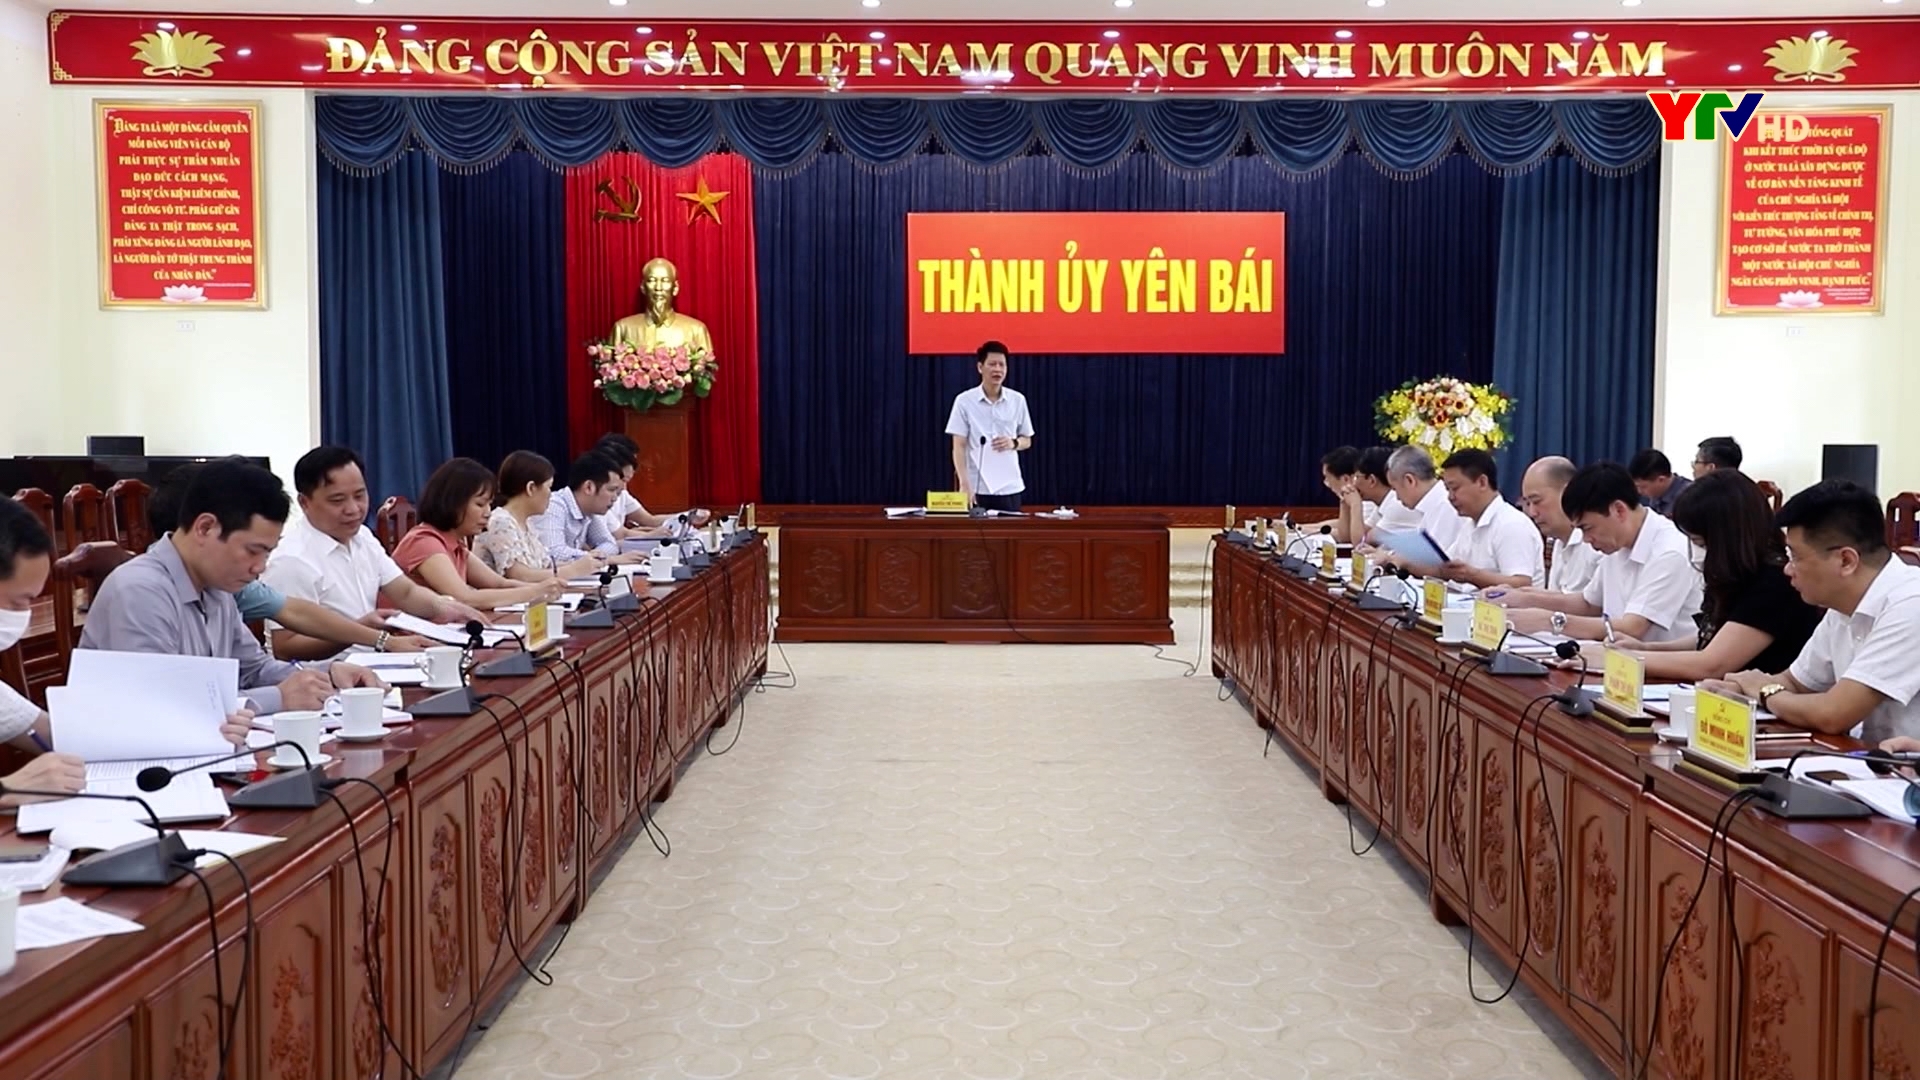 Đoàn công tác của tỉnh kiểm tra việc thực hiện các nghị quyết chuyên đề tại Đảng bộ thành phố Yên Bái.